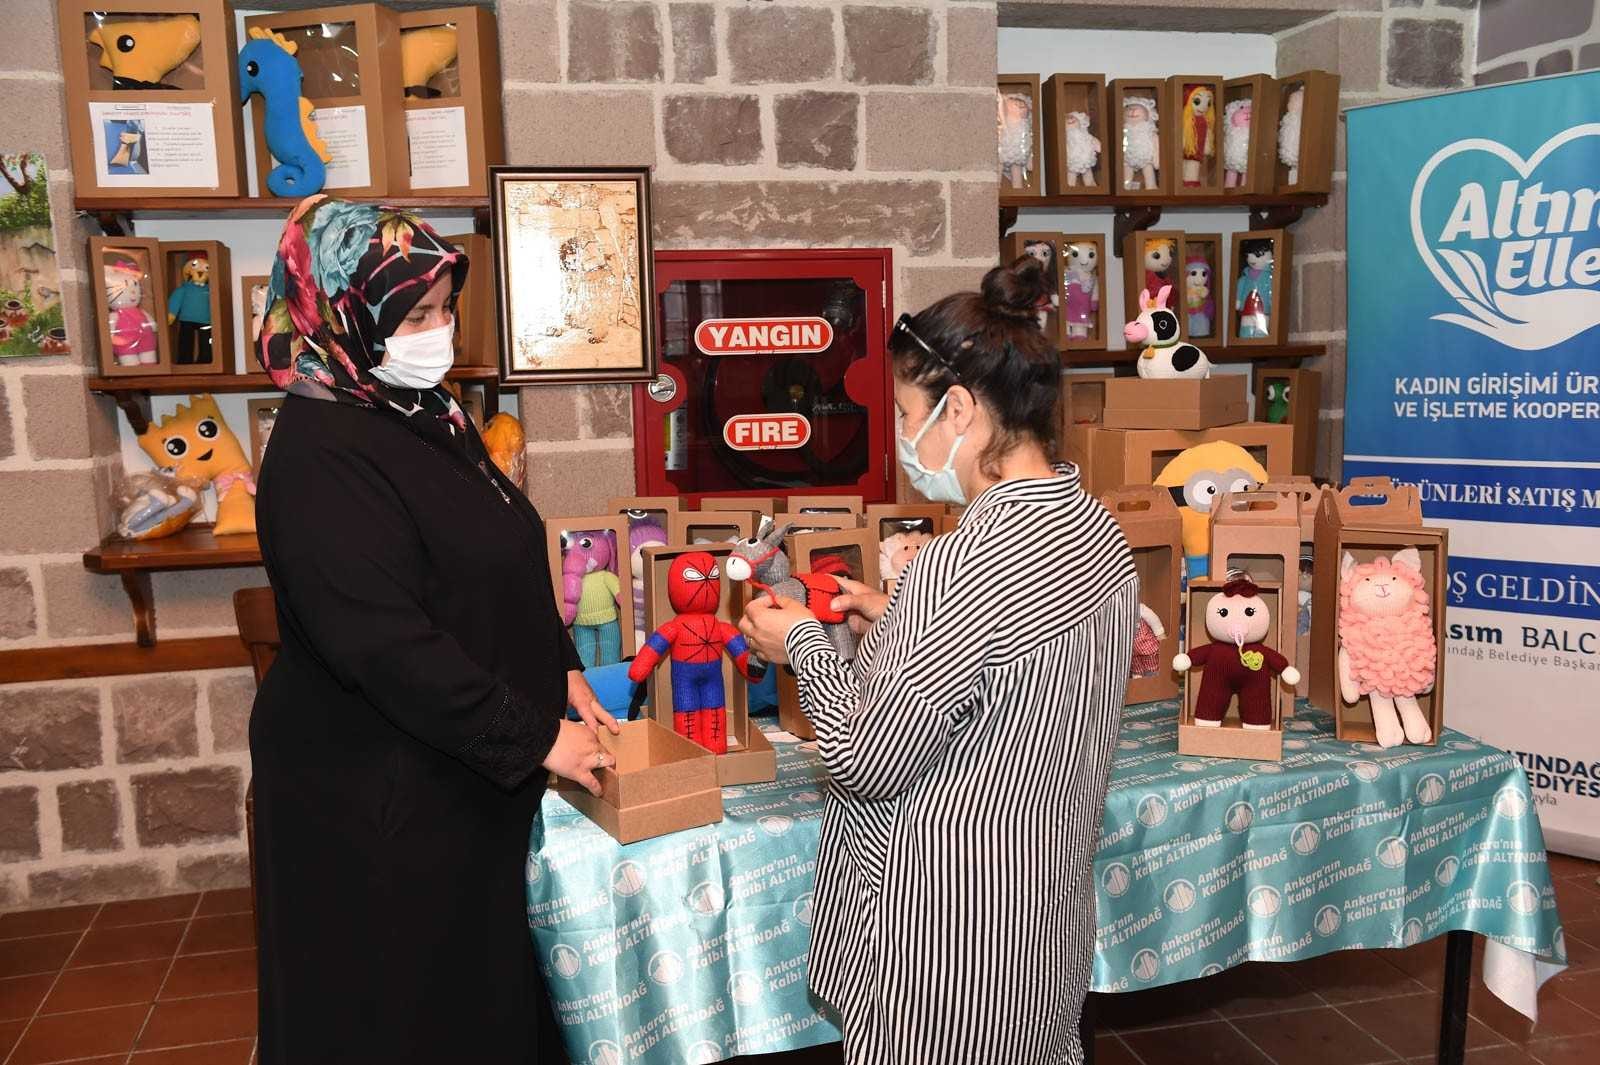 ‘Altın Eller’ ile 300 kadına ekonomik kazanç #ankara